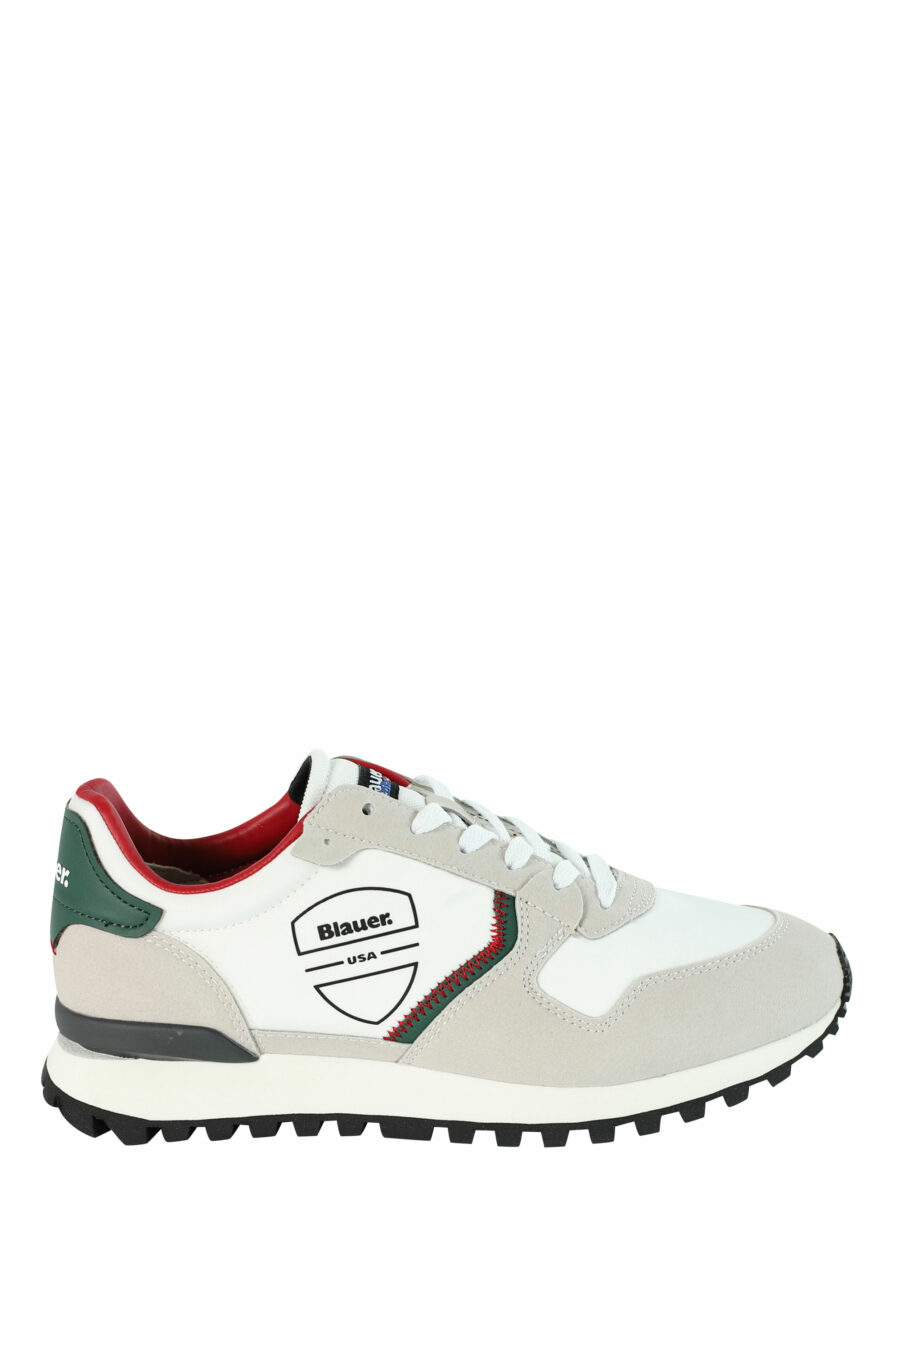 Zapatillas "DIXON" blancas mix con detalles rojos y verdes - 8058156493902